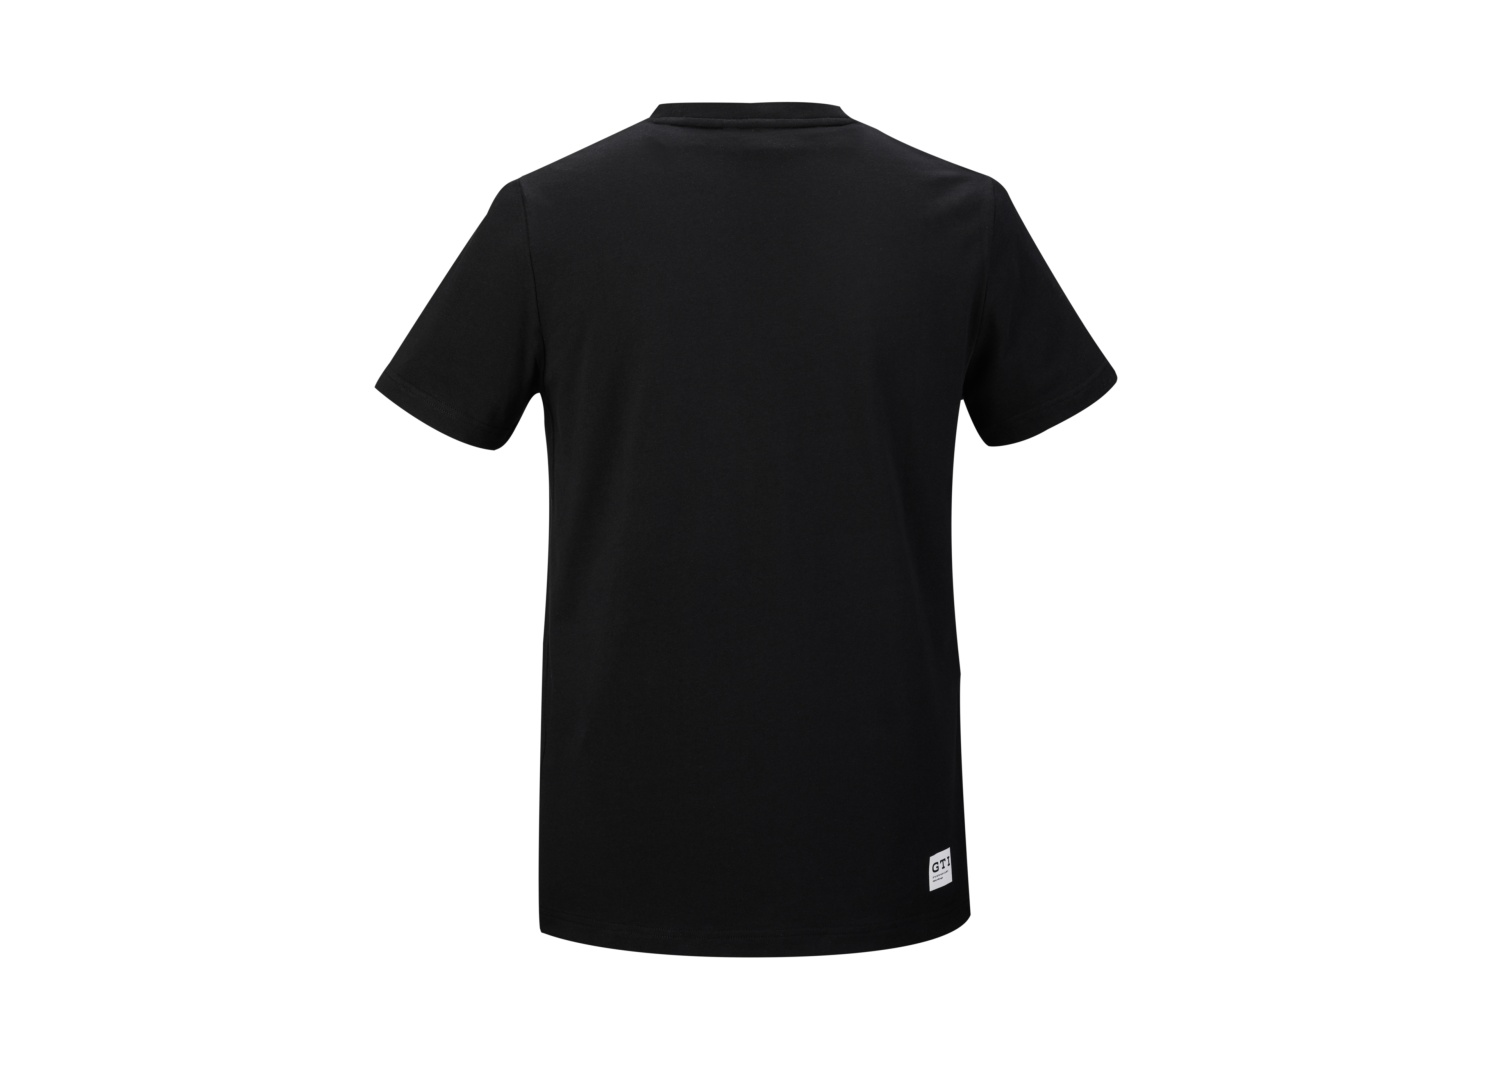 Camiseta para hombre, nueva colección GTI - Ítem - 1